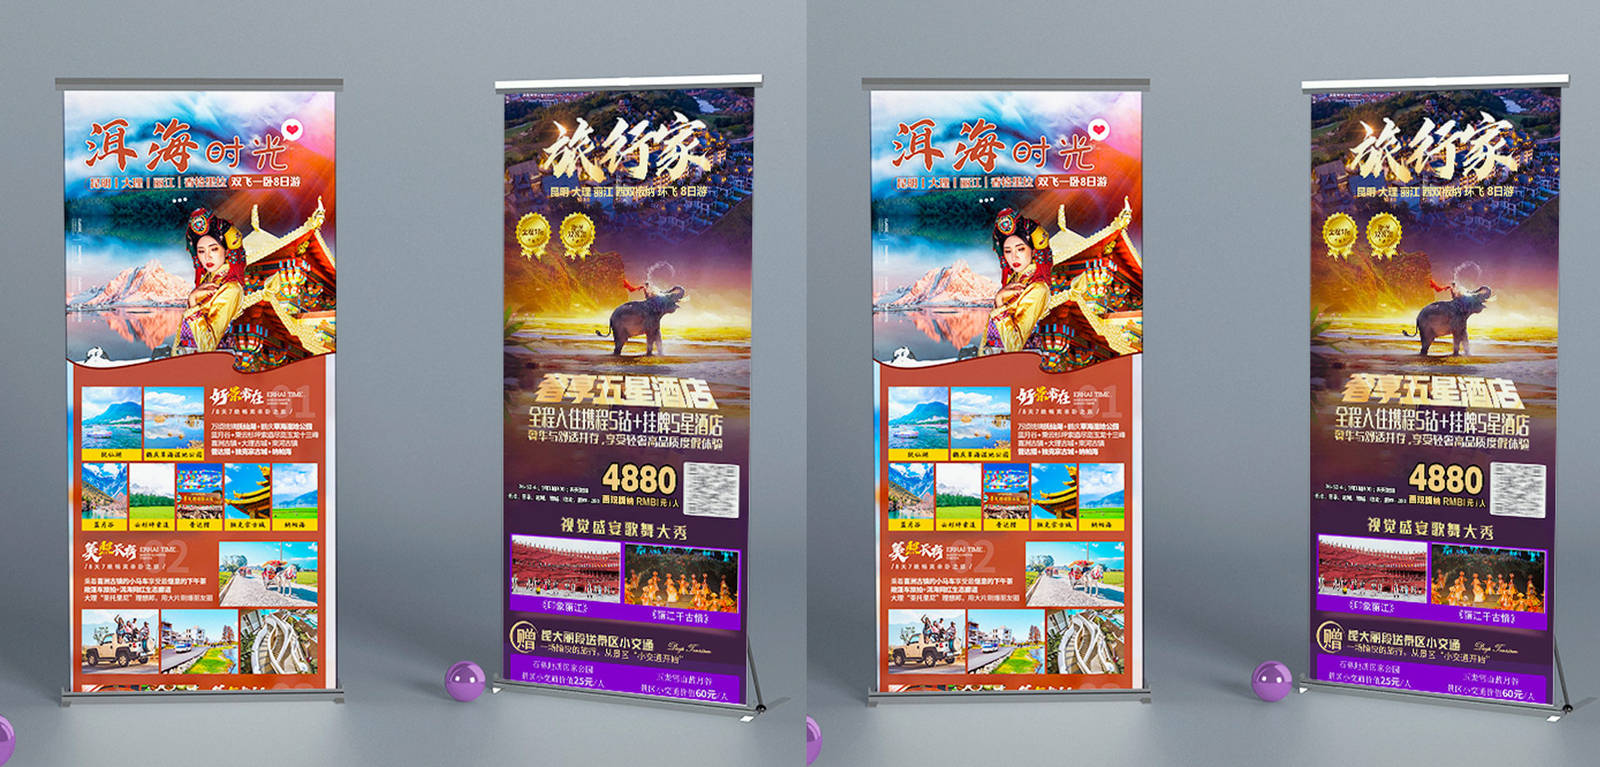 云南休闲旅游品牌宣传系列海报